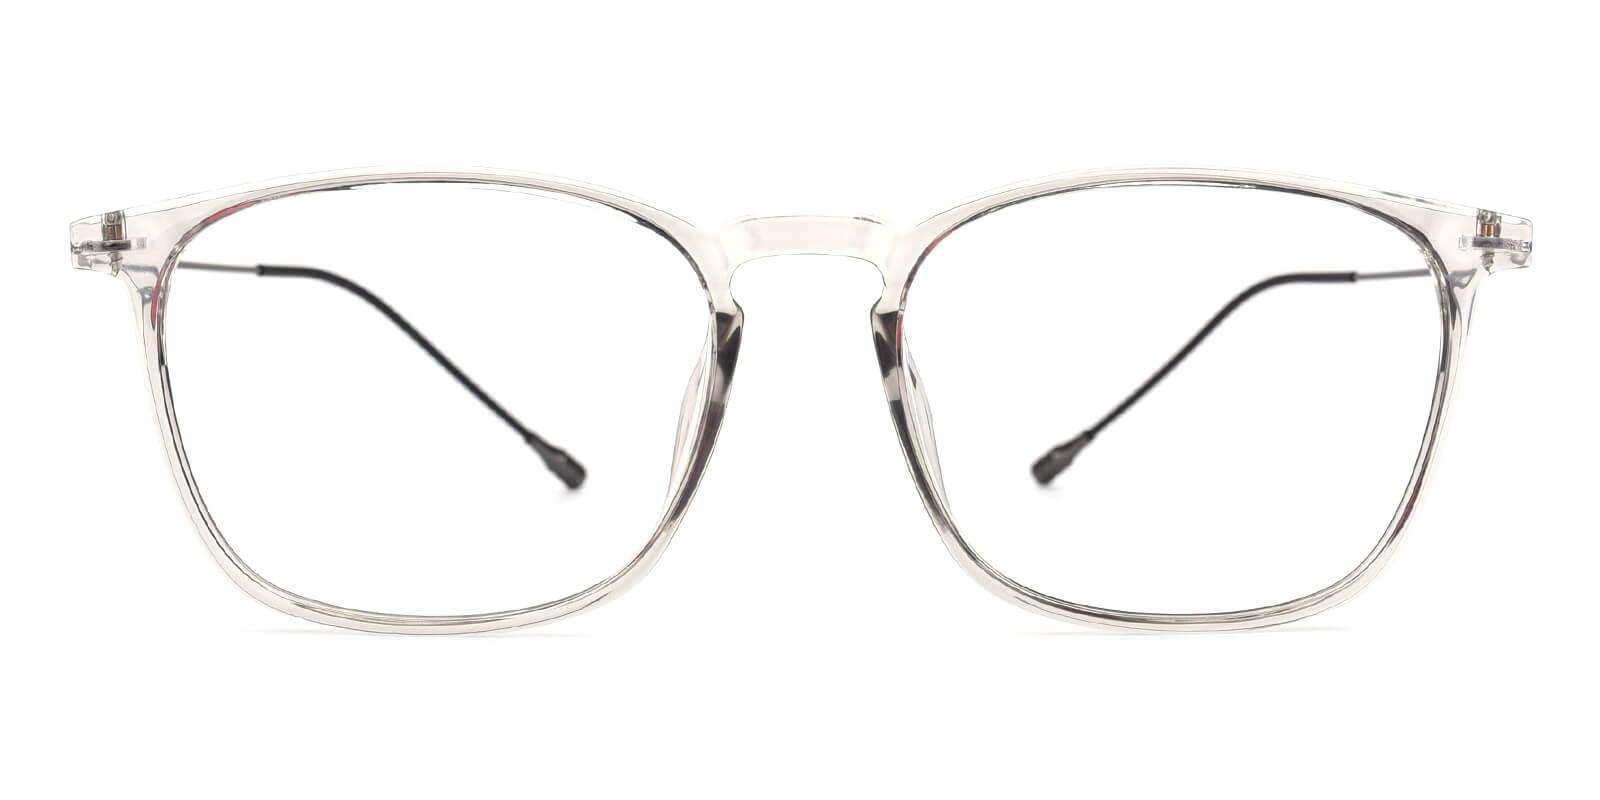 Quauetom-Gray-Square-TR / Metal-Eyeglasses-detail